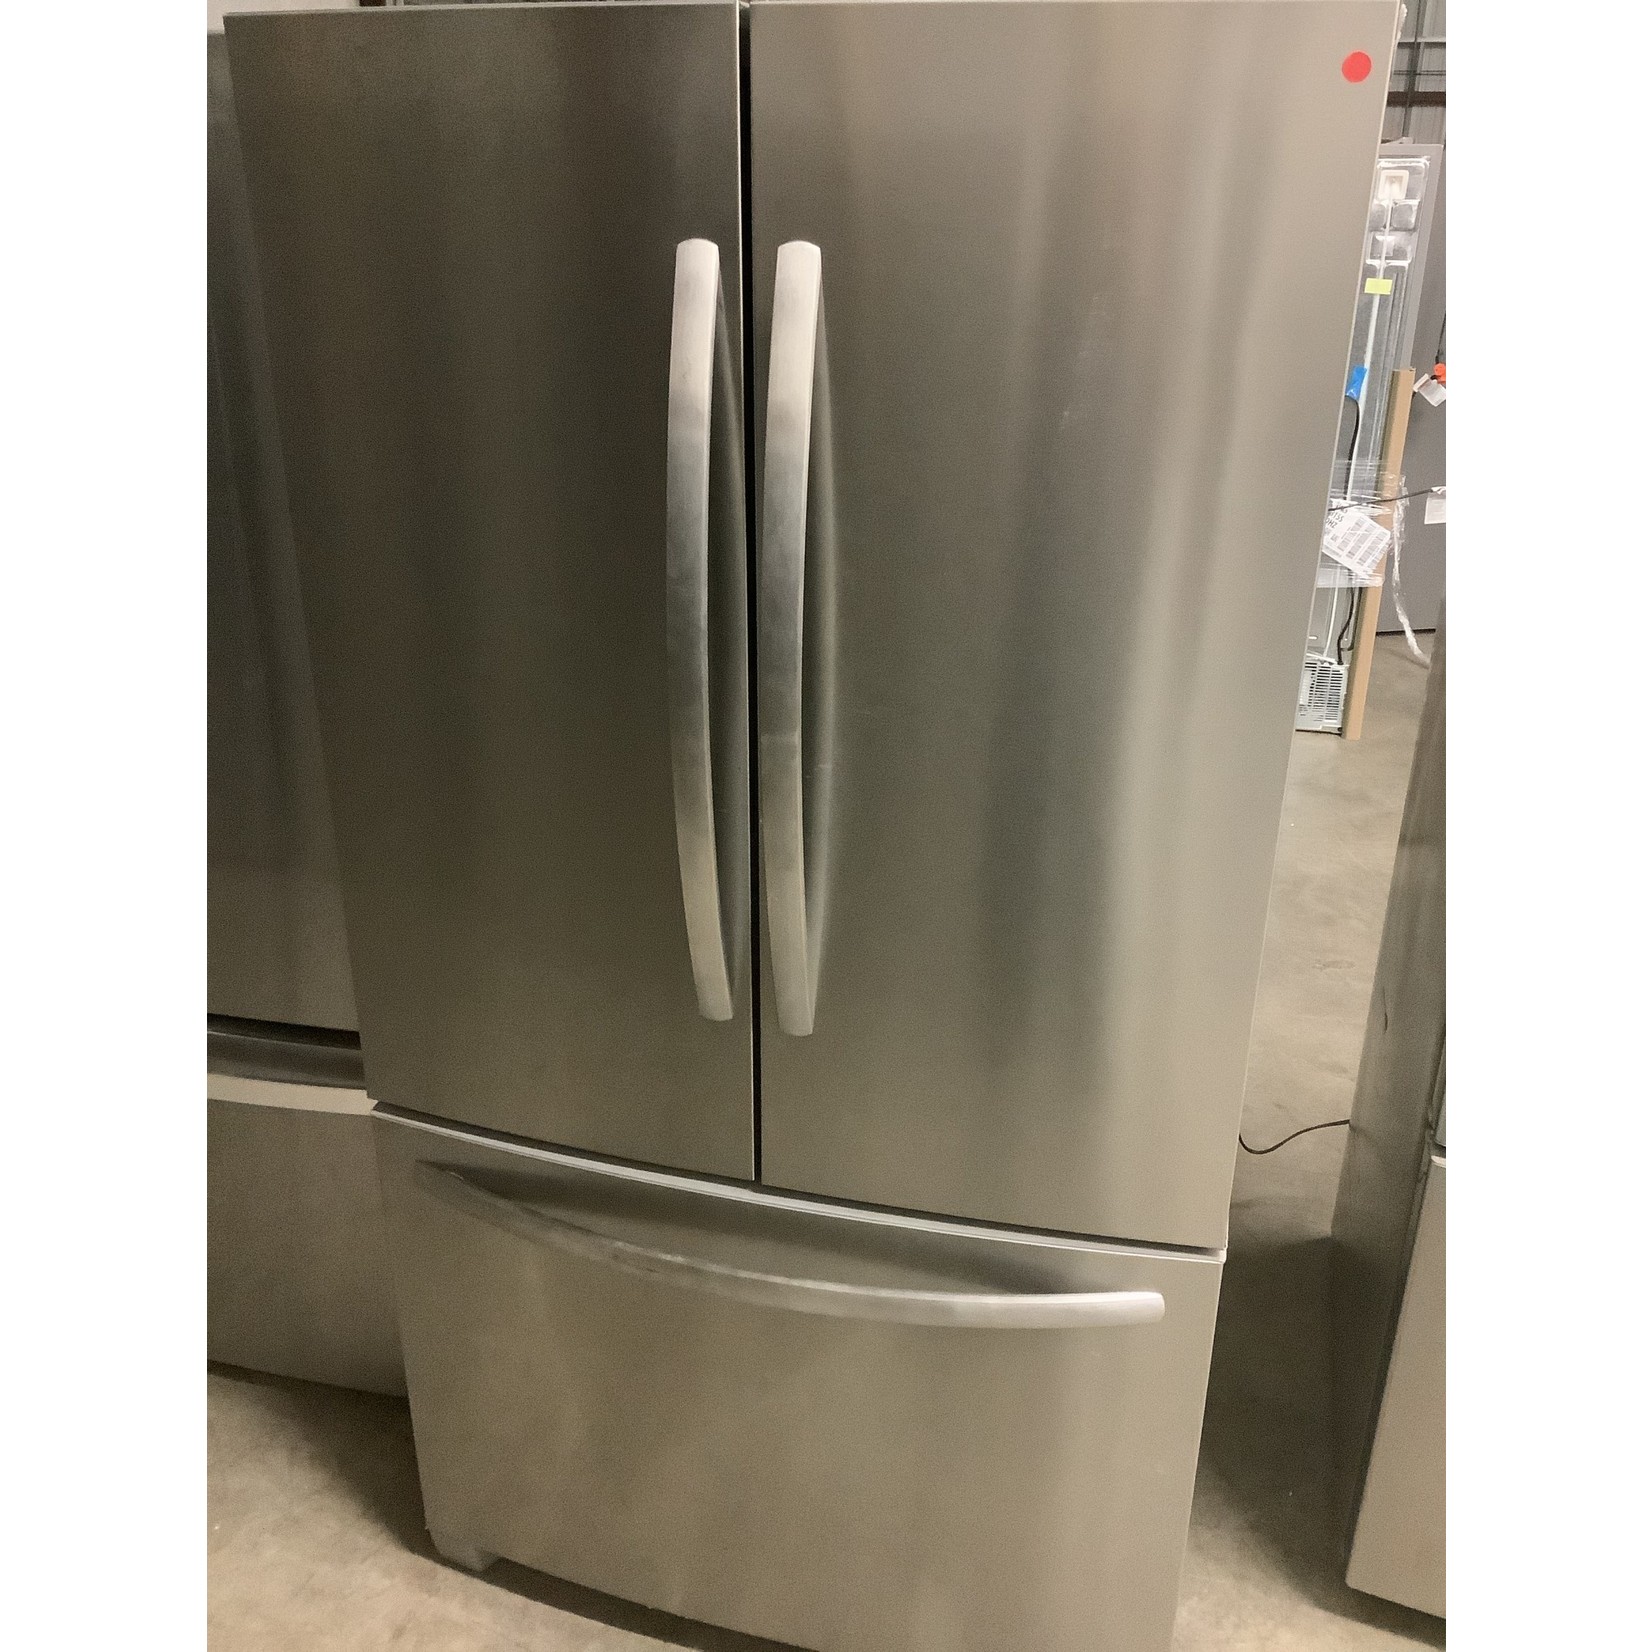 FRIGIDAIRE 3door refrigerator